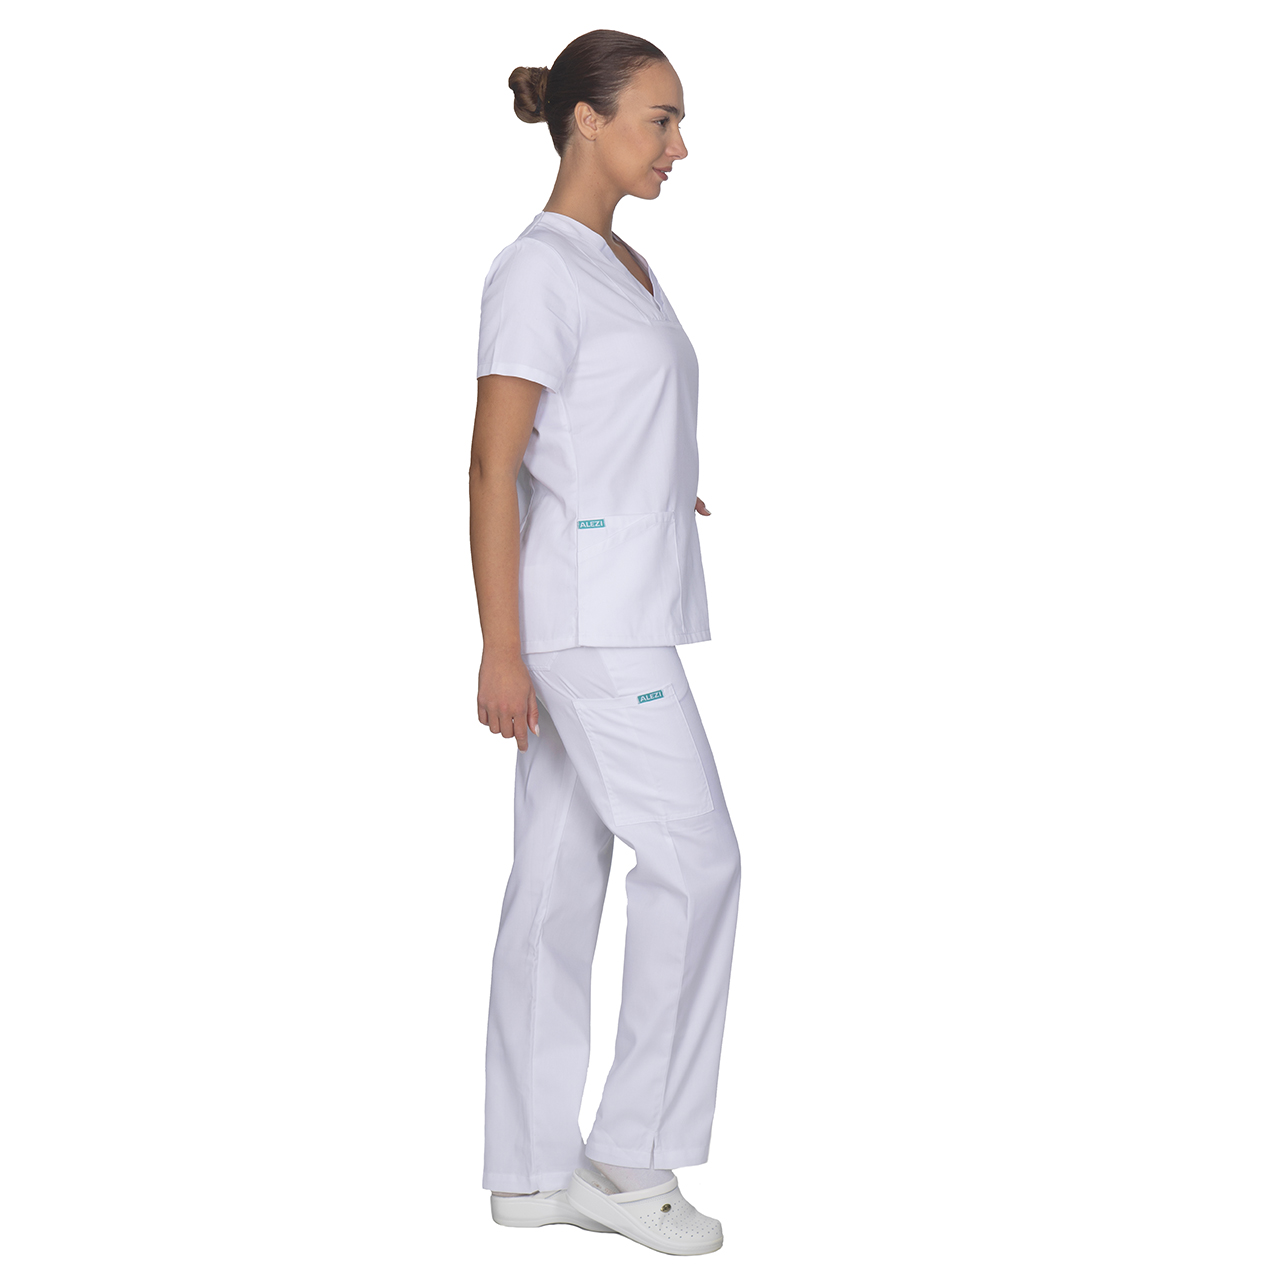 Ιατρική Στολή Γυναικεία Μπλούζα - Παντελόνι (Σετ) Λευκό 